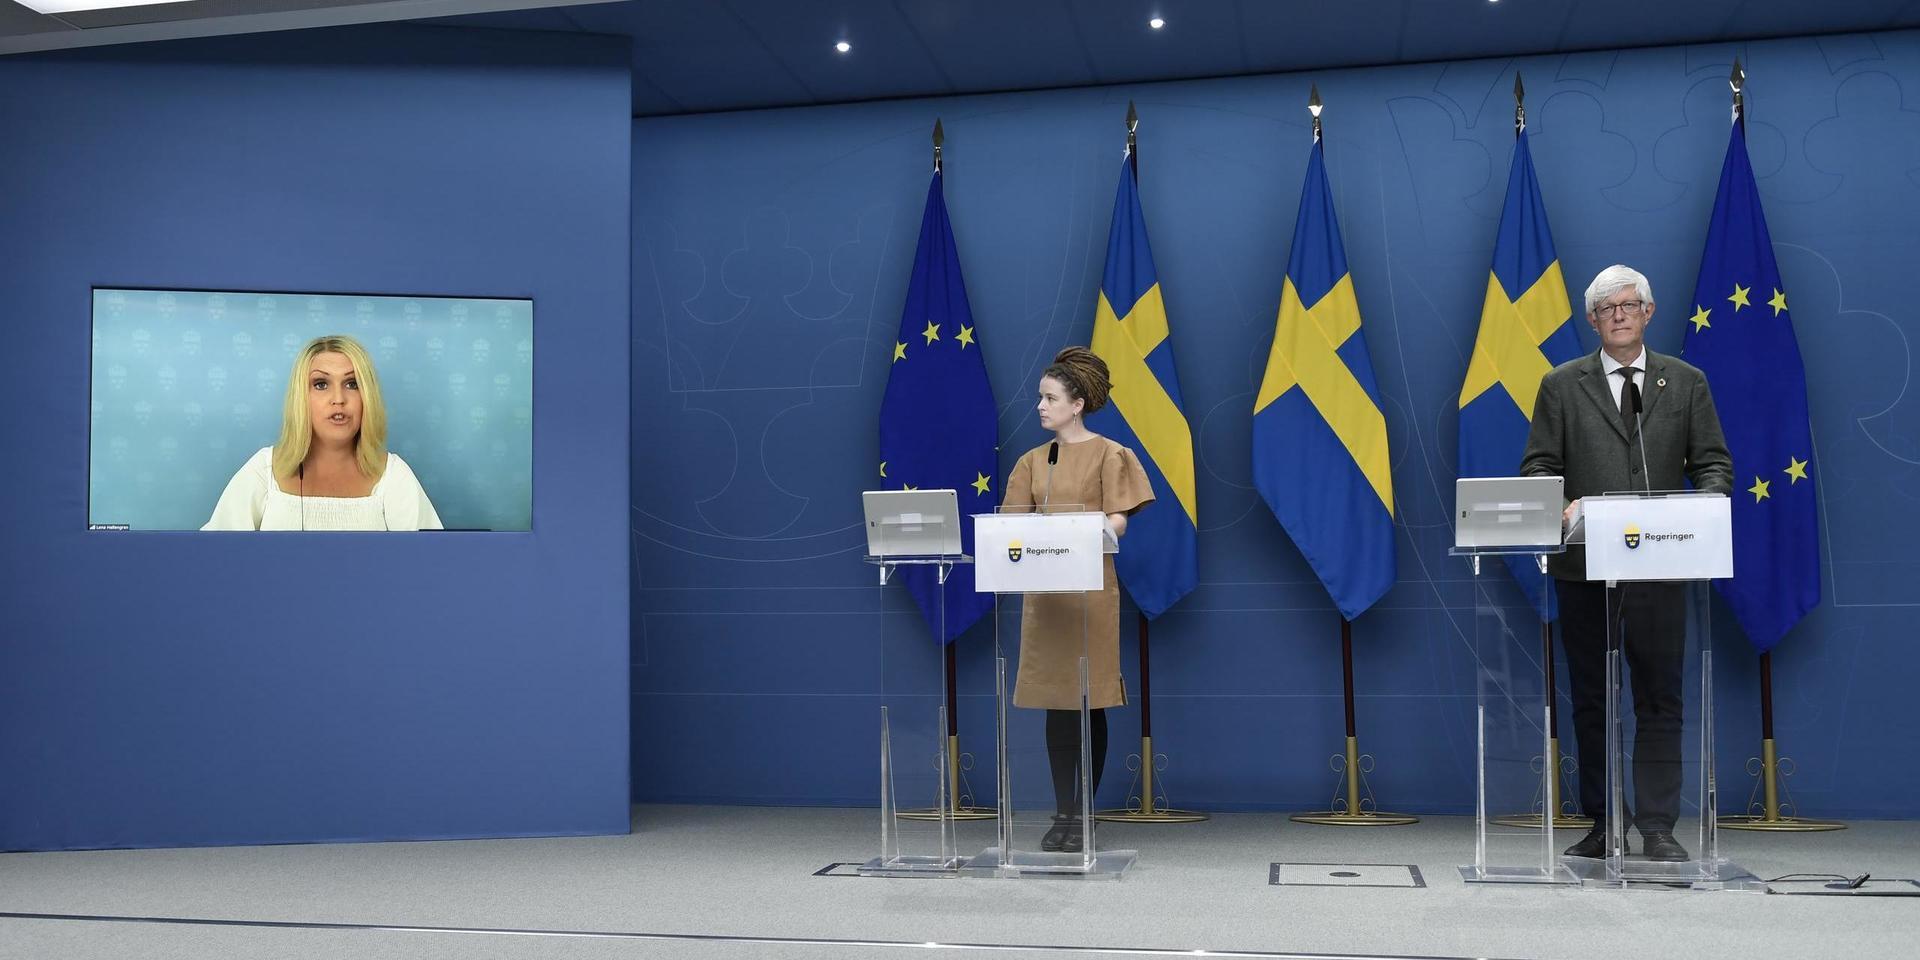 De nya lättnaderna presenterades av socialminister Lena Hallengren (S), kultur- och demokratiminister Amanda Lind (MP) och Folkhälsomyndighetens generaldirektör Johan Carlson på en presskonferens i veckan.